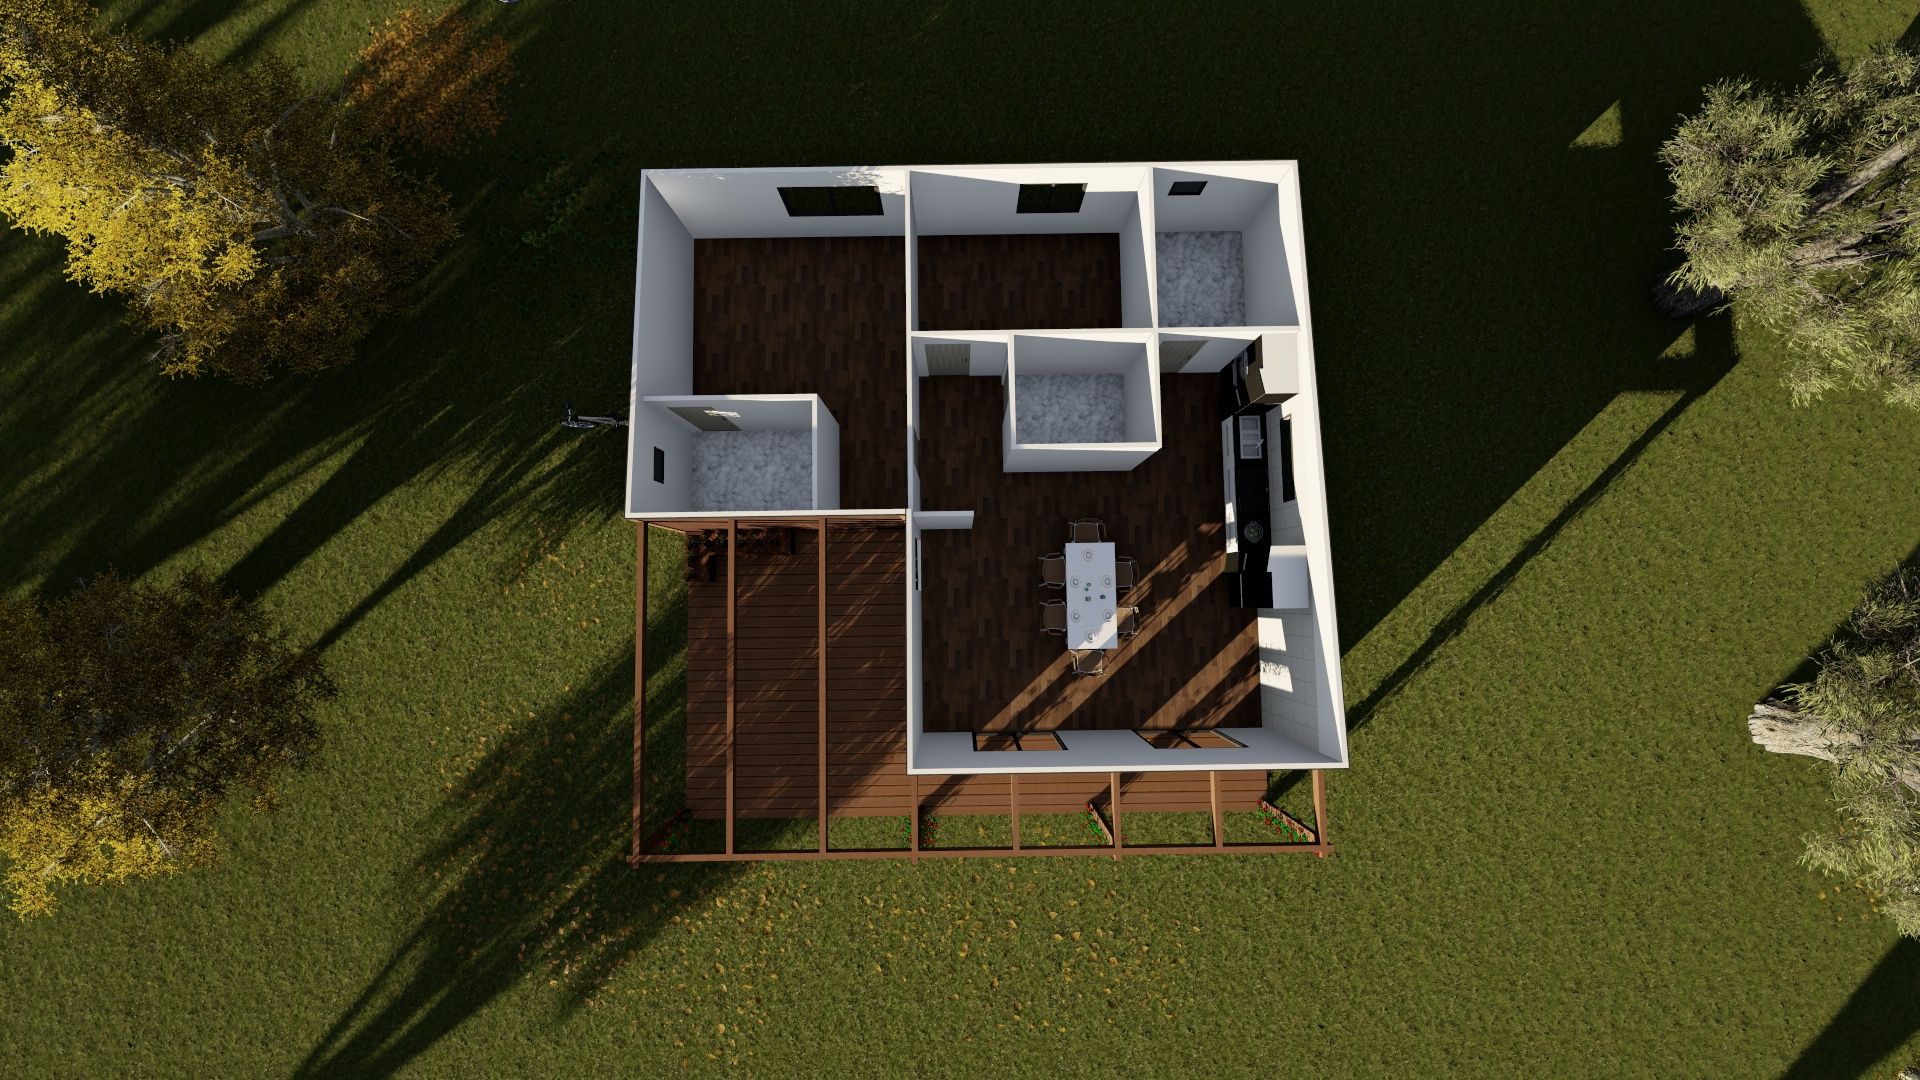 Casa modular de tipologia T2 com 123m², Discovercasa | Casas de Madeira & Modulares Discovercasa | Casas de Madeira & Modulares プレハブ住宅 木 木目調